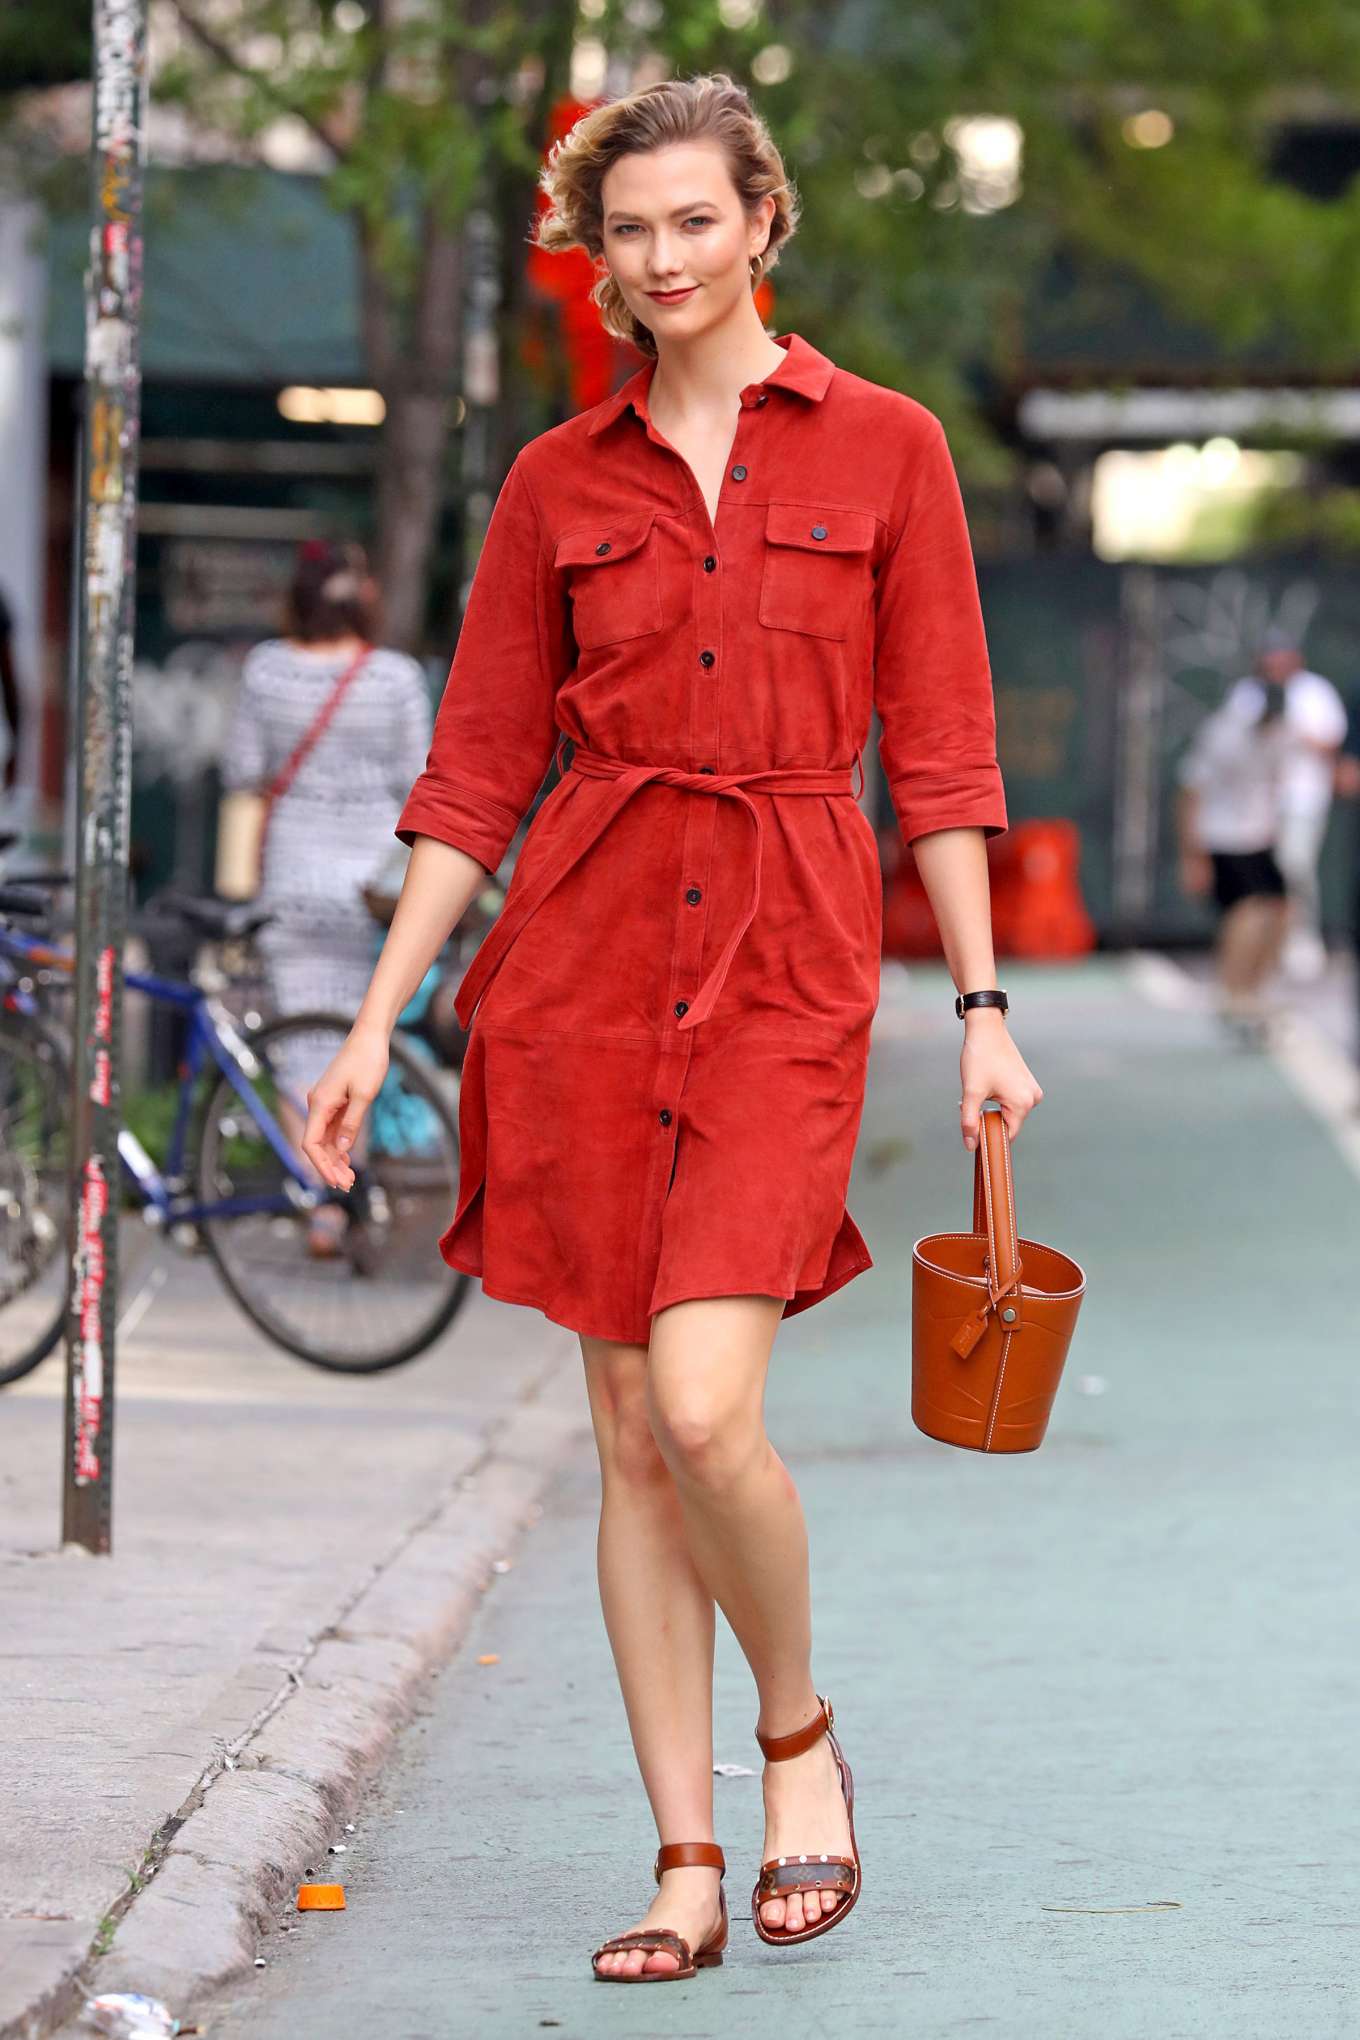 Karlie Kloss Wearing A Red Dress 18 Gotceleb